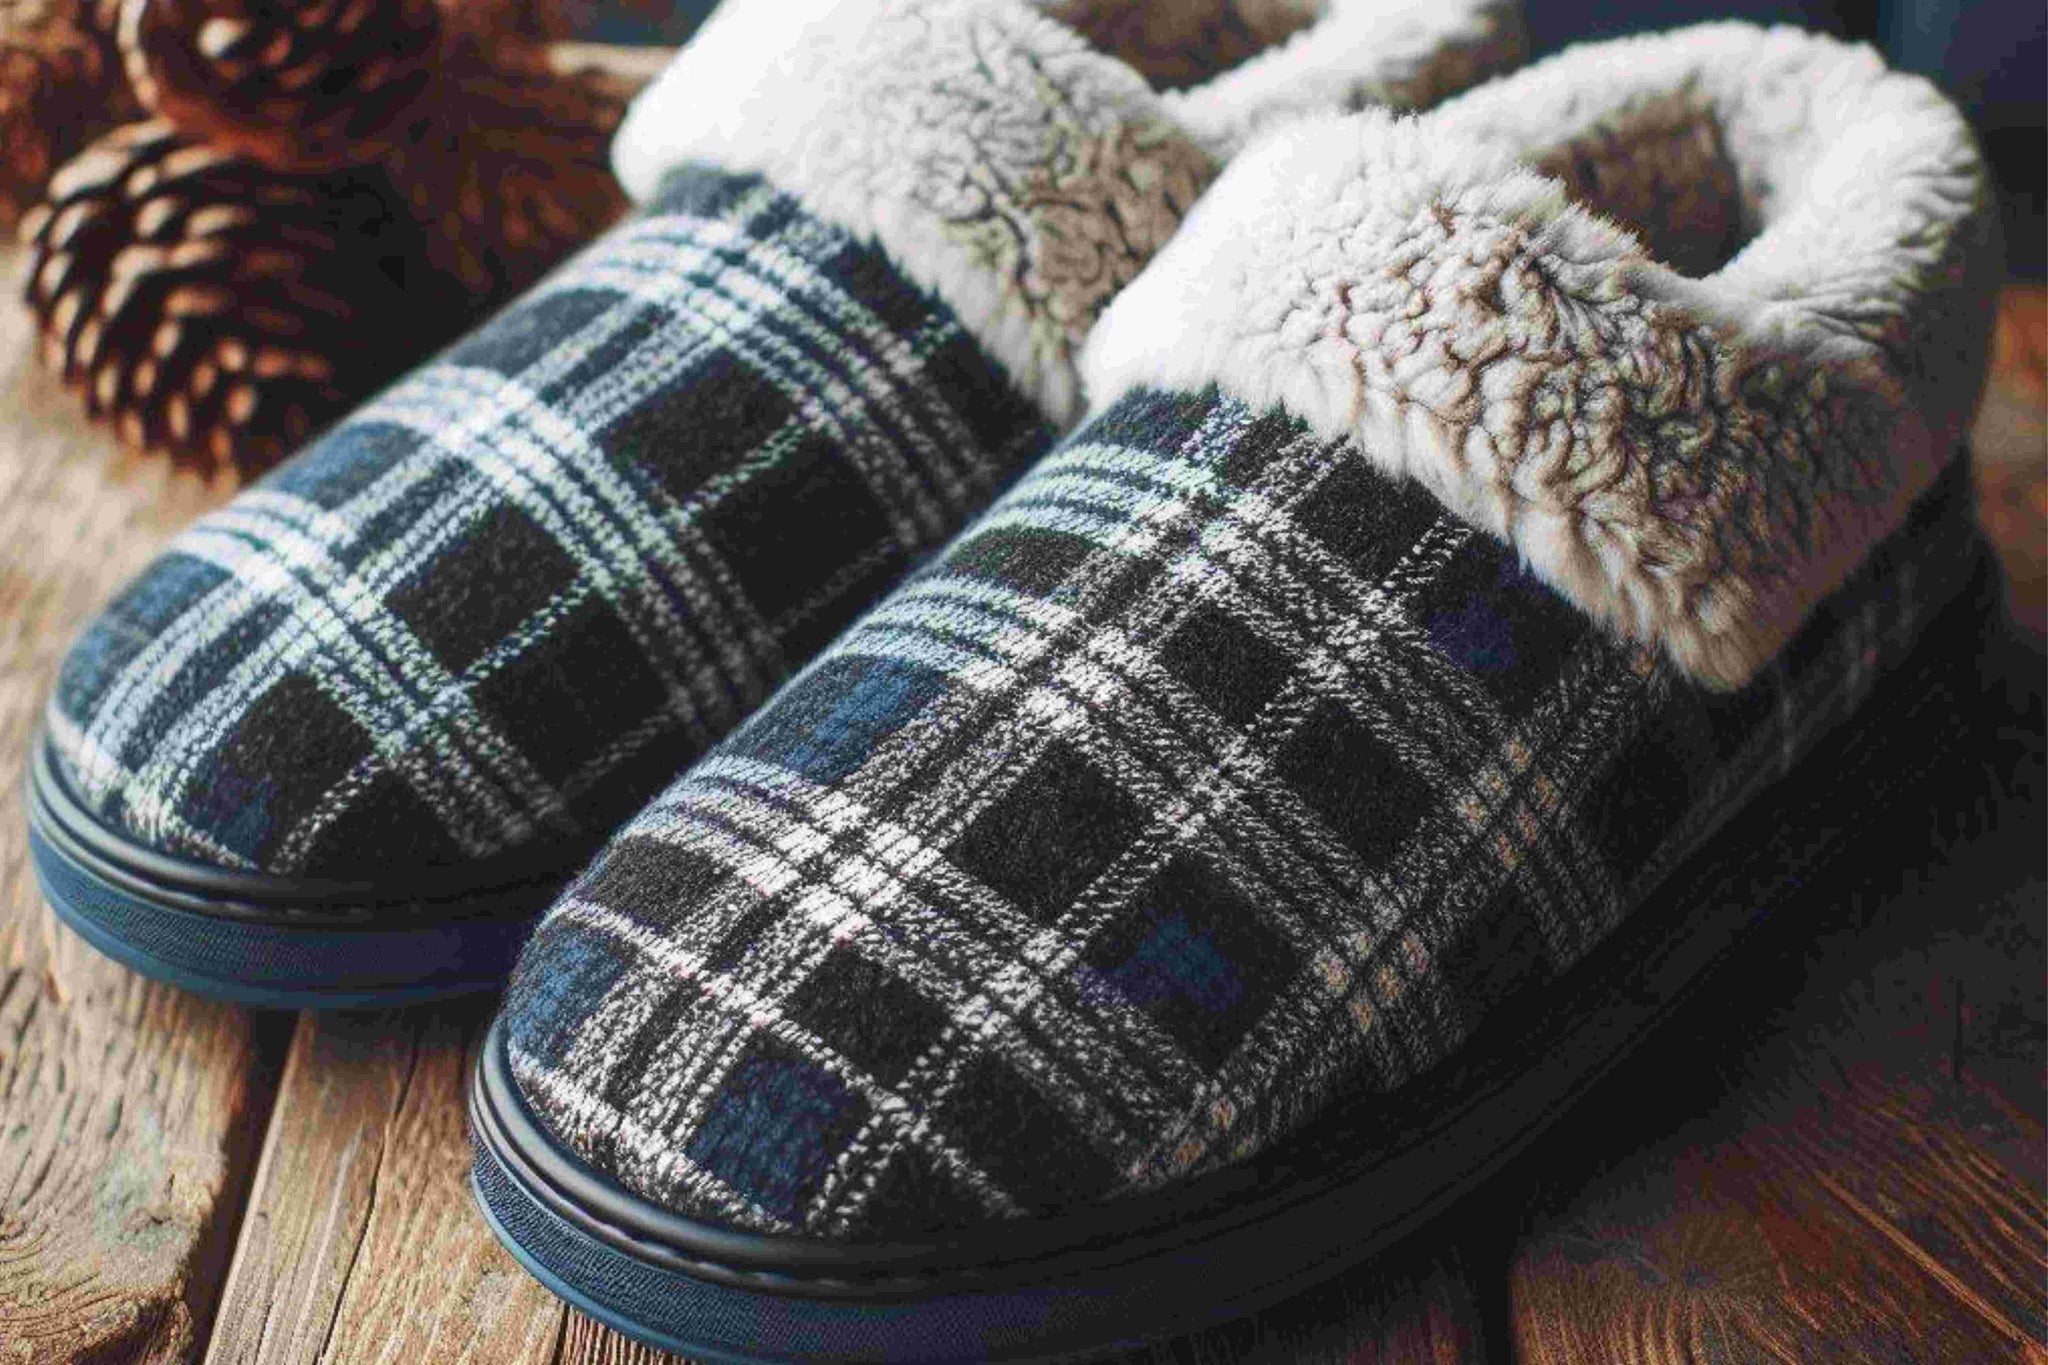 Cozy Comfort: Men's Slippers for Indoor Relaxation